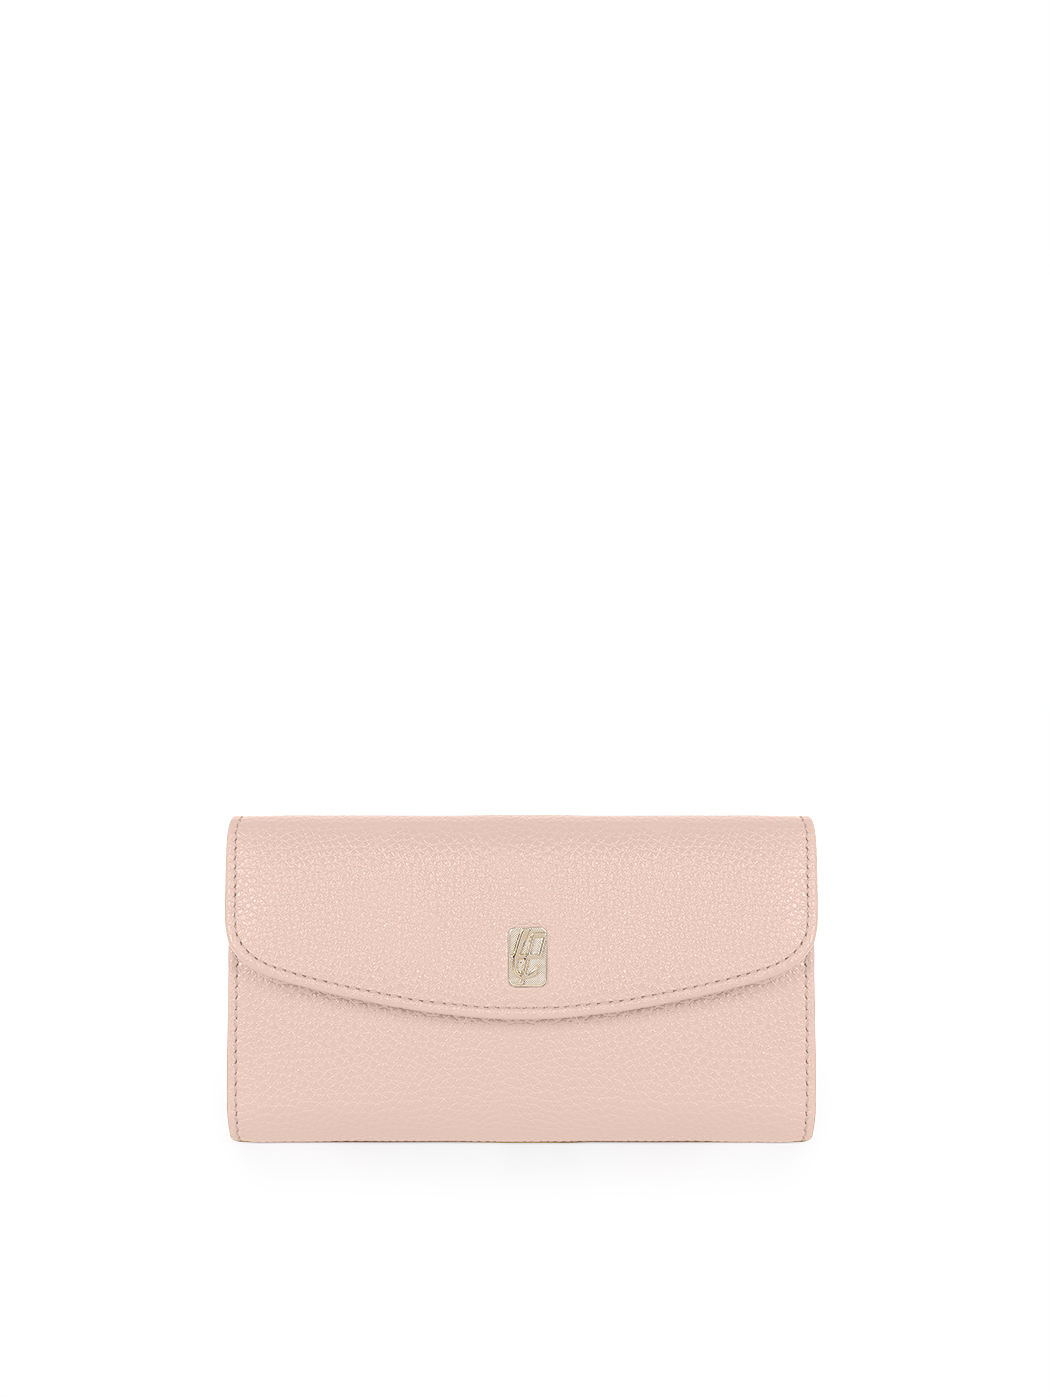 Женский кожаный кошелек светло - розового цвета